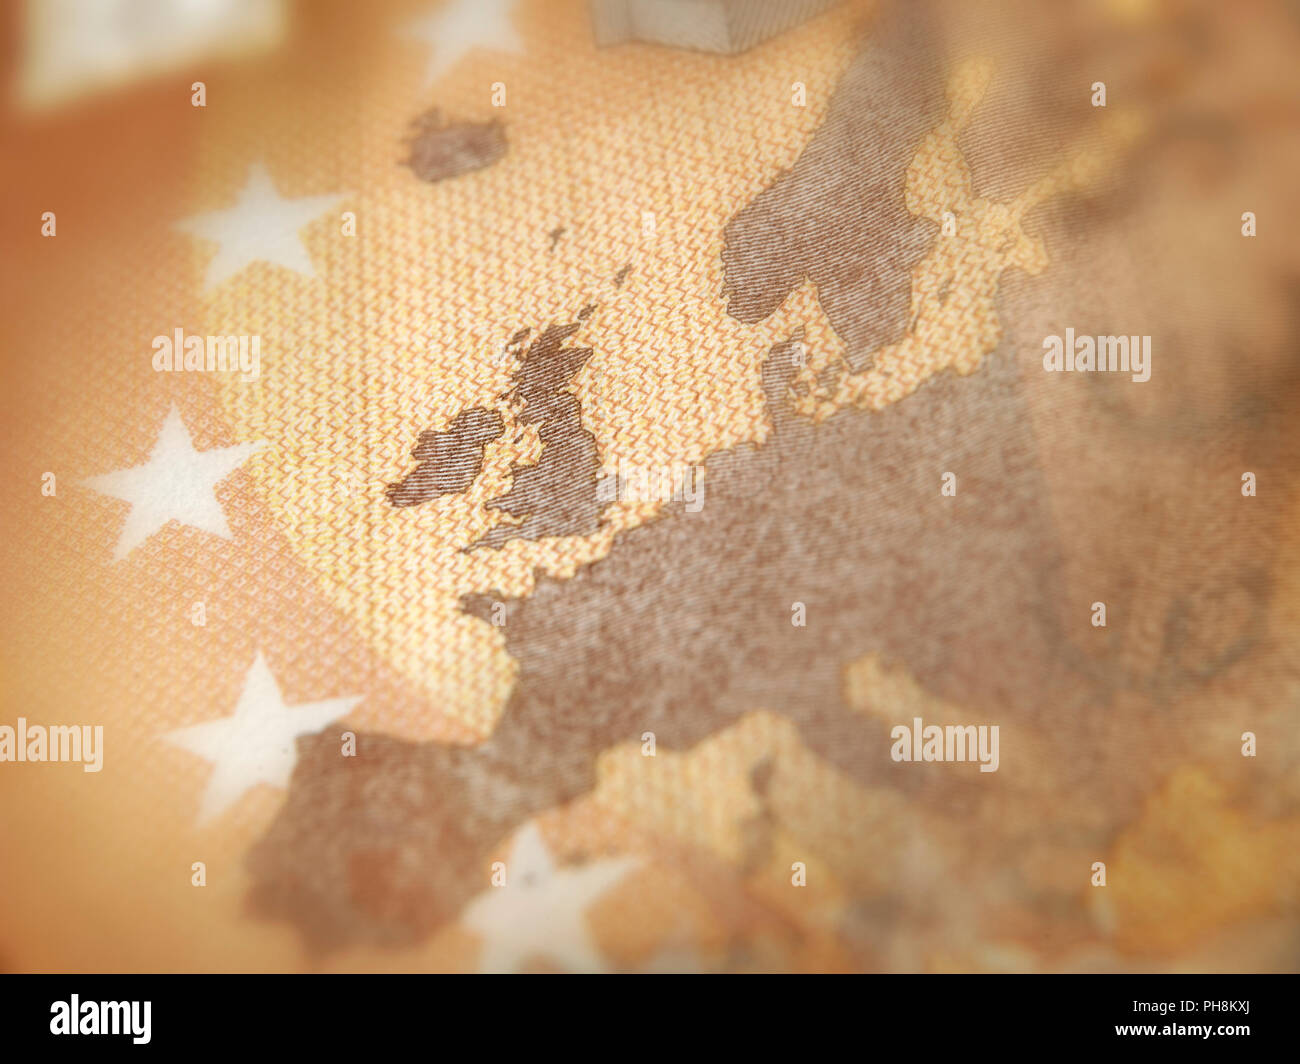 Messa a fuoco poco profonde sulla banconota in euro. Dettaglio che mostra una mappa di Europa con il focus sulla Gran Bretagna. Concetto Brexit. Foto Stock